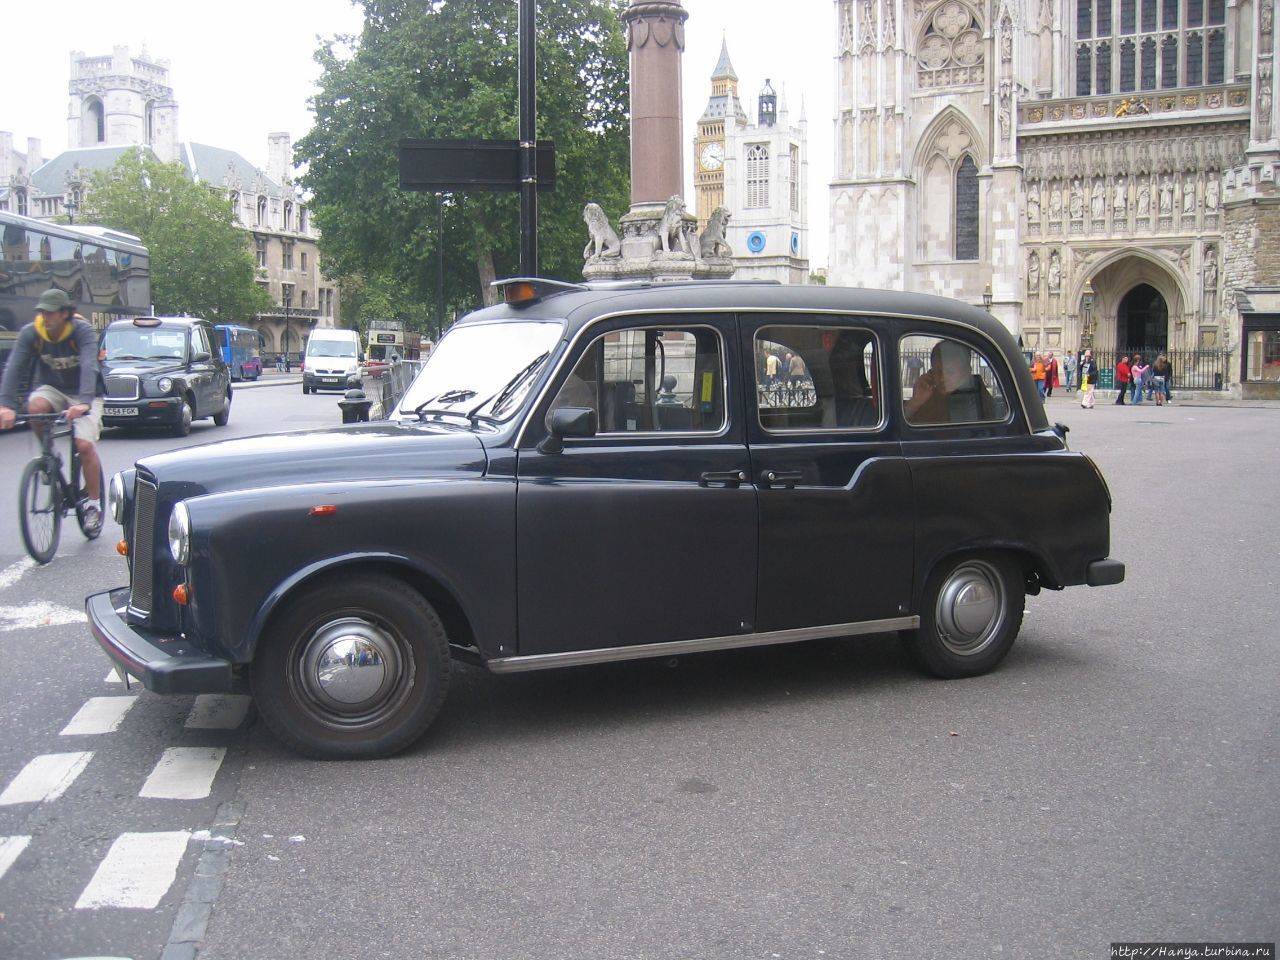 Знаменитый лондонский кэб-такси Лондон, Великобритания